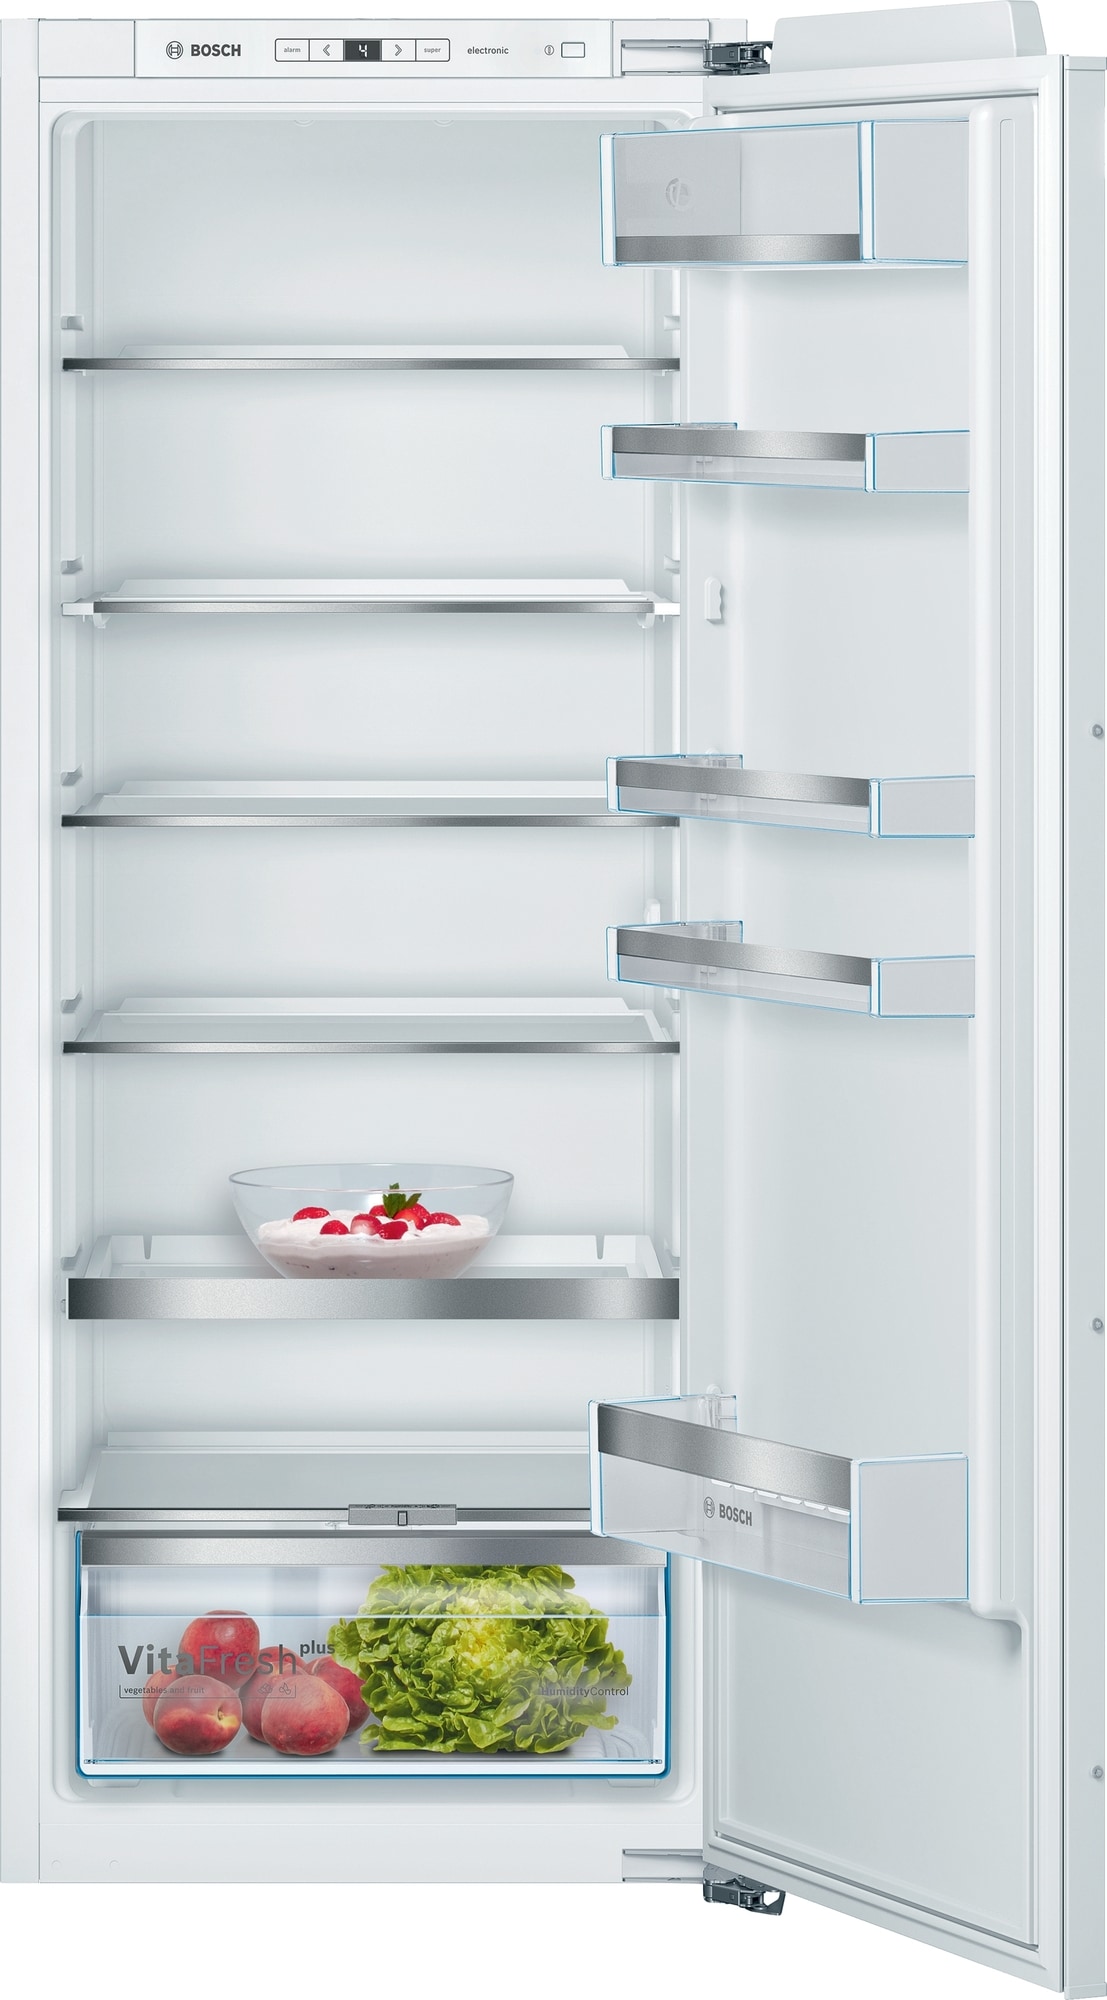 Bosch jääkaappi KIR51AFF0 integroitava - Gigantti verkkokauppa